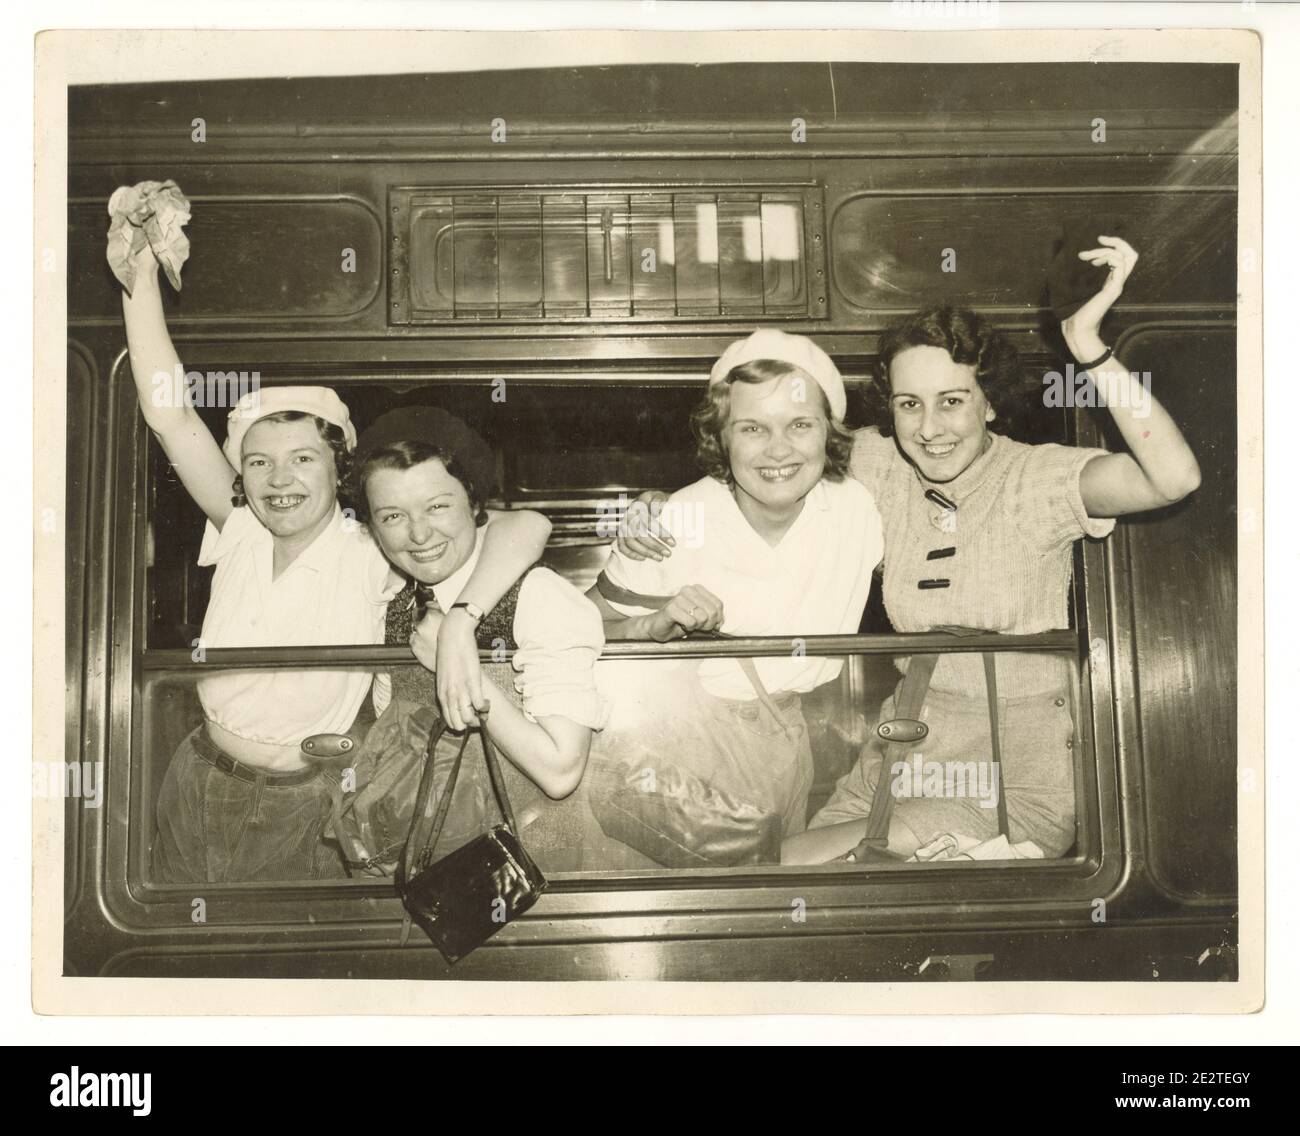 Foto stampa dell'era WW2 di felici giovani camminatori alla stazione ferroviaria, che si alzano dalla finestra di un treno a vapore, Londra, Regno Unito, anni '40 Foto Stock